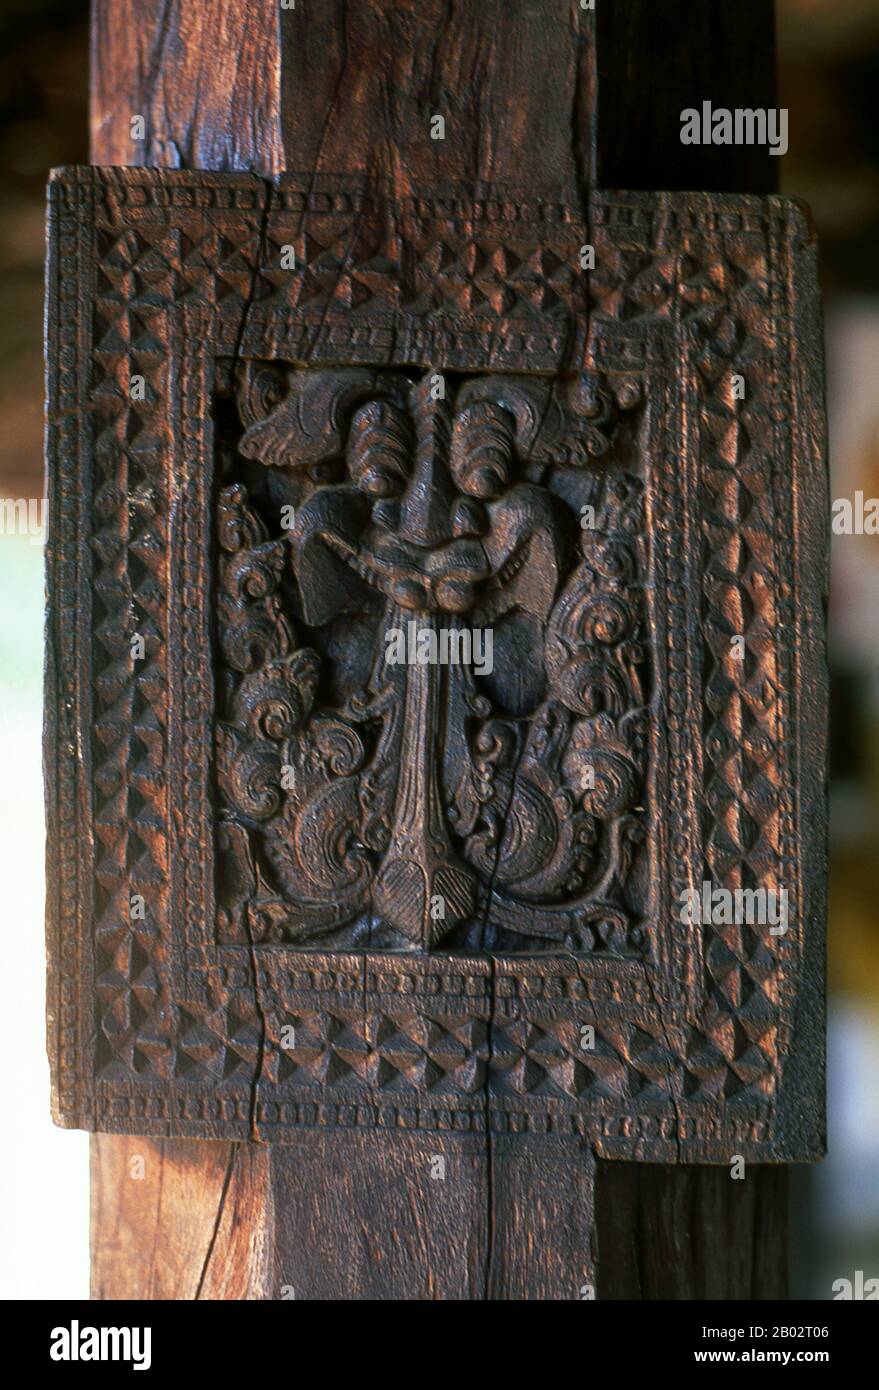 Embekka Devalaya (Embekke-Tempel) wurde von König Vikramabahu III (r. 1357 - 1374). Hauptattraktion sind hier die hervorragend gepflegten Schnitzereien an den Säulen in der Trommlerhalle. Die feinsten der etwa 500 Figuren sind die Tänzerin, ein doppelköpfiger Adler, die Schwäne und die Soldaten. Kandy ist mit rund 170.000 Einwohnern die zweitgrößte Stadt Sri Lankas und ist das kulturelle Zentrum der ganzen Insel. Etwa zwei Jahrhunderte lang (bis zum Jahr 1815) war es die Hauptstadt Sri Lankas. Stockfoto